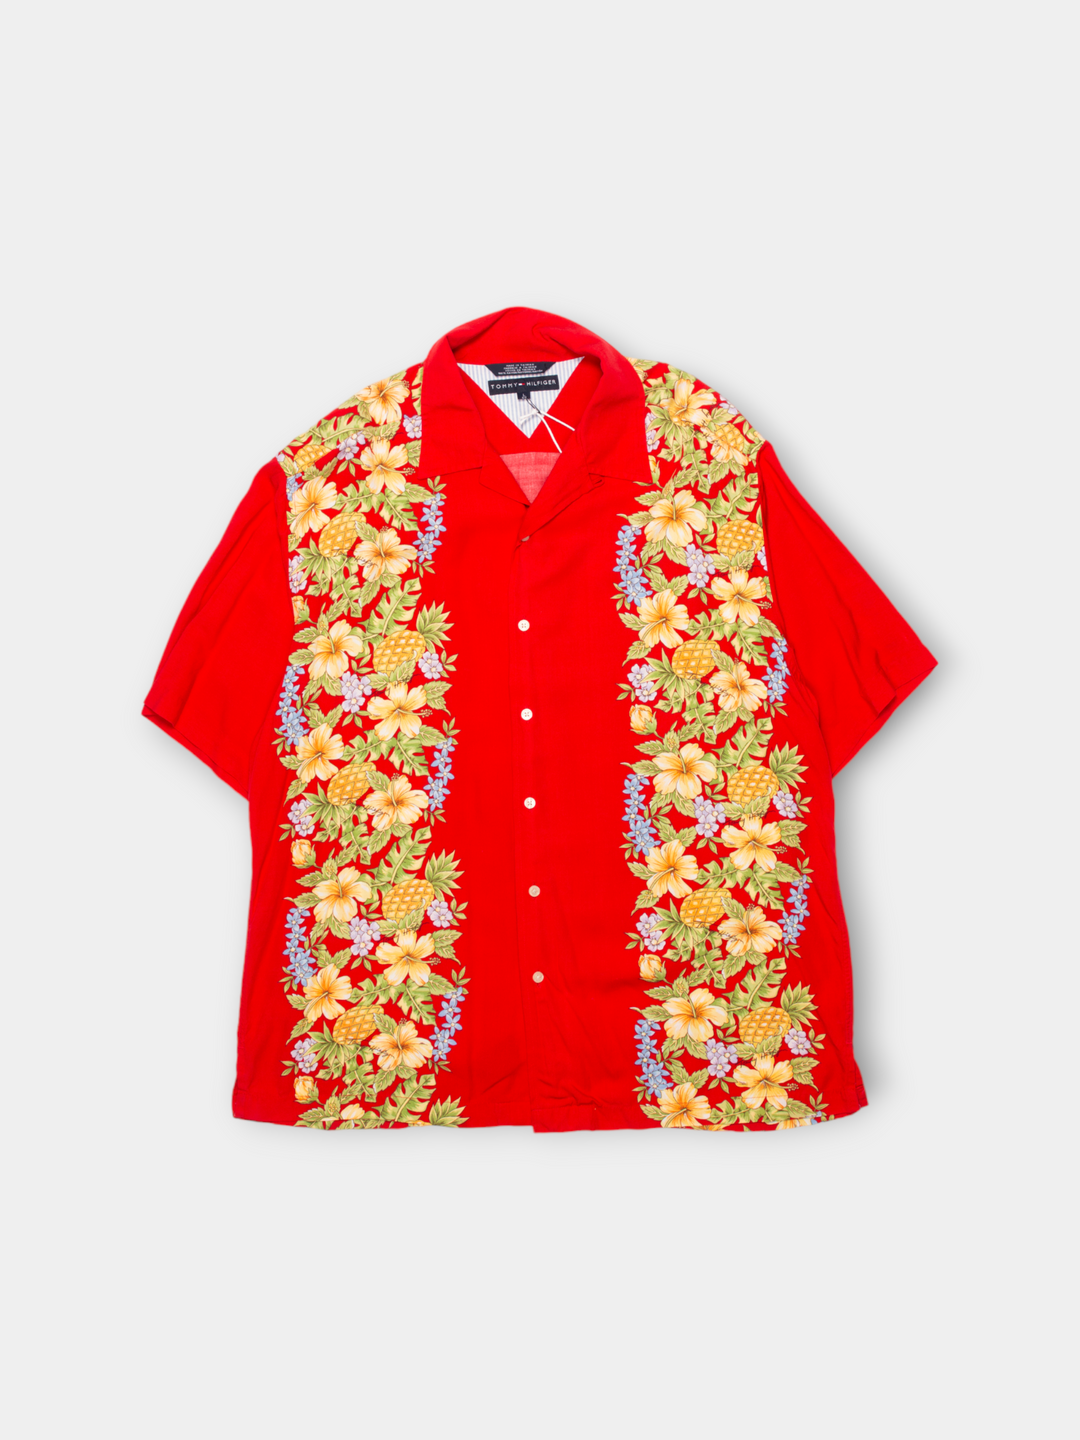 Vintage Tommy Hilfiger Vacation Shirt (L)